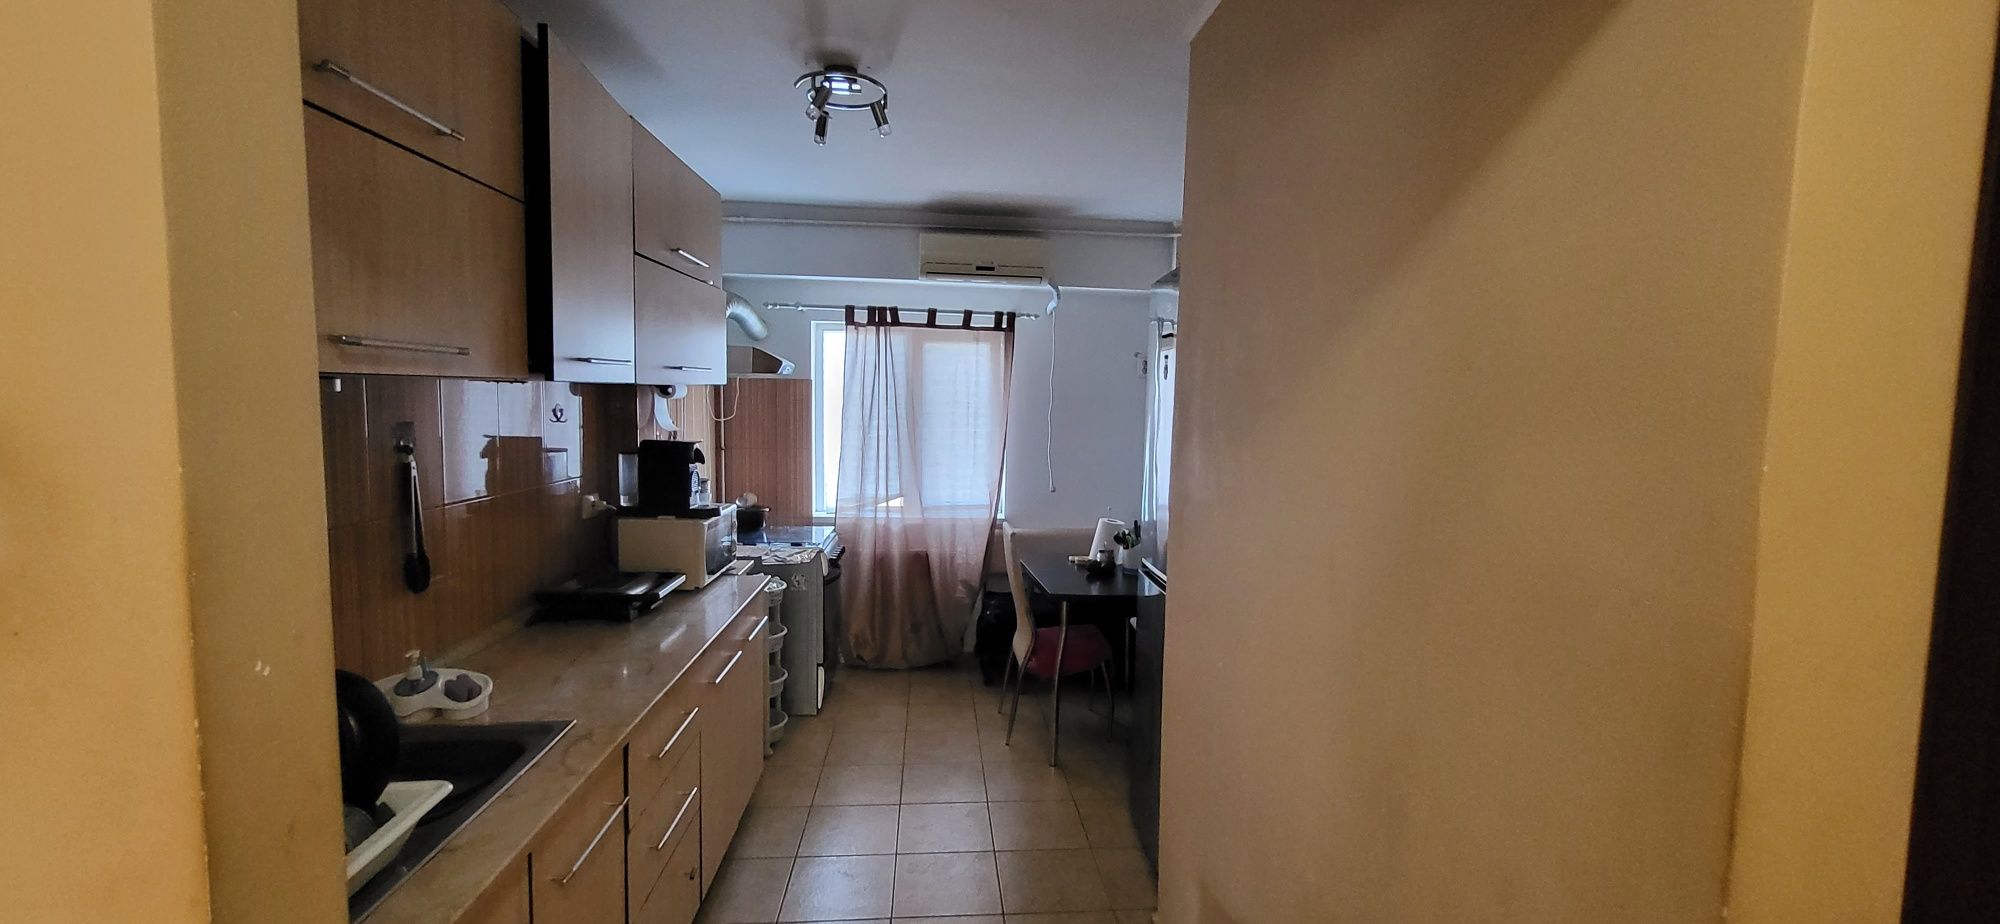 Apartament 3 camere Metrou Brancoveanu